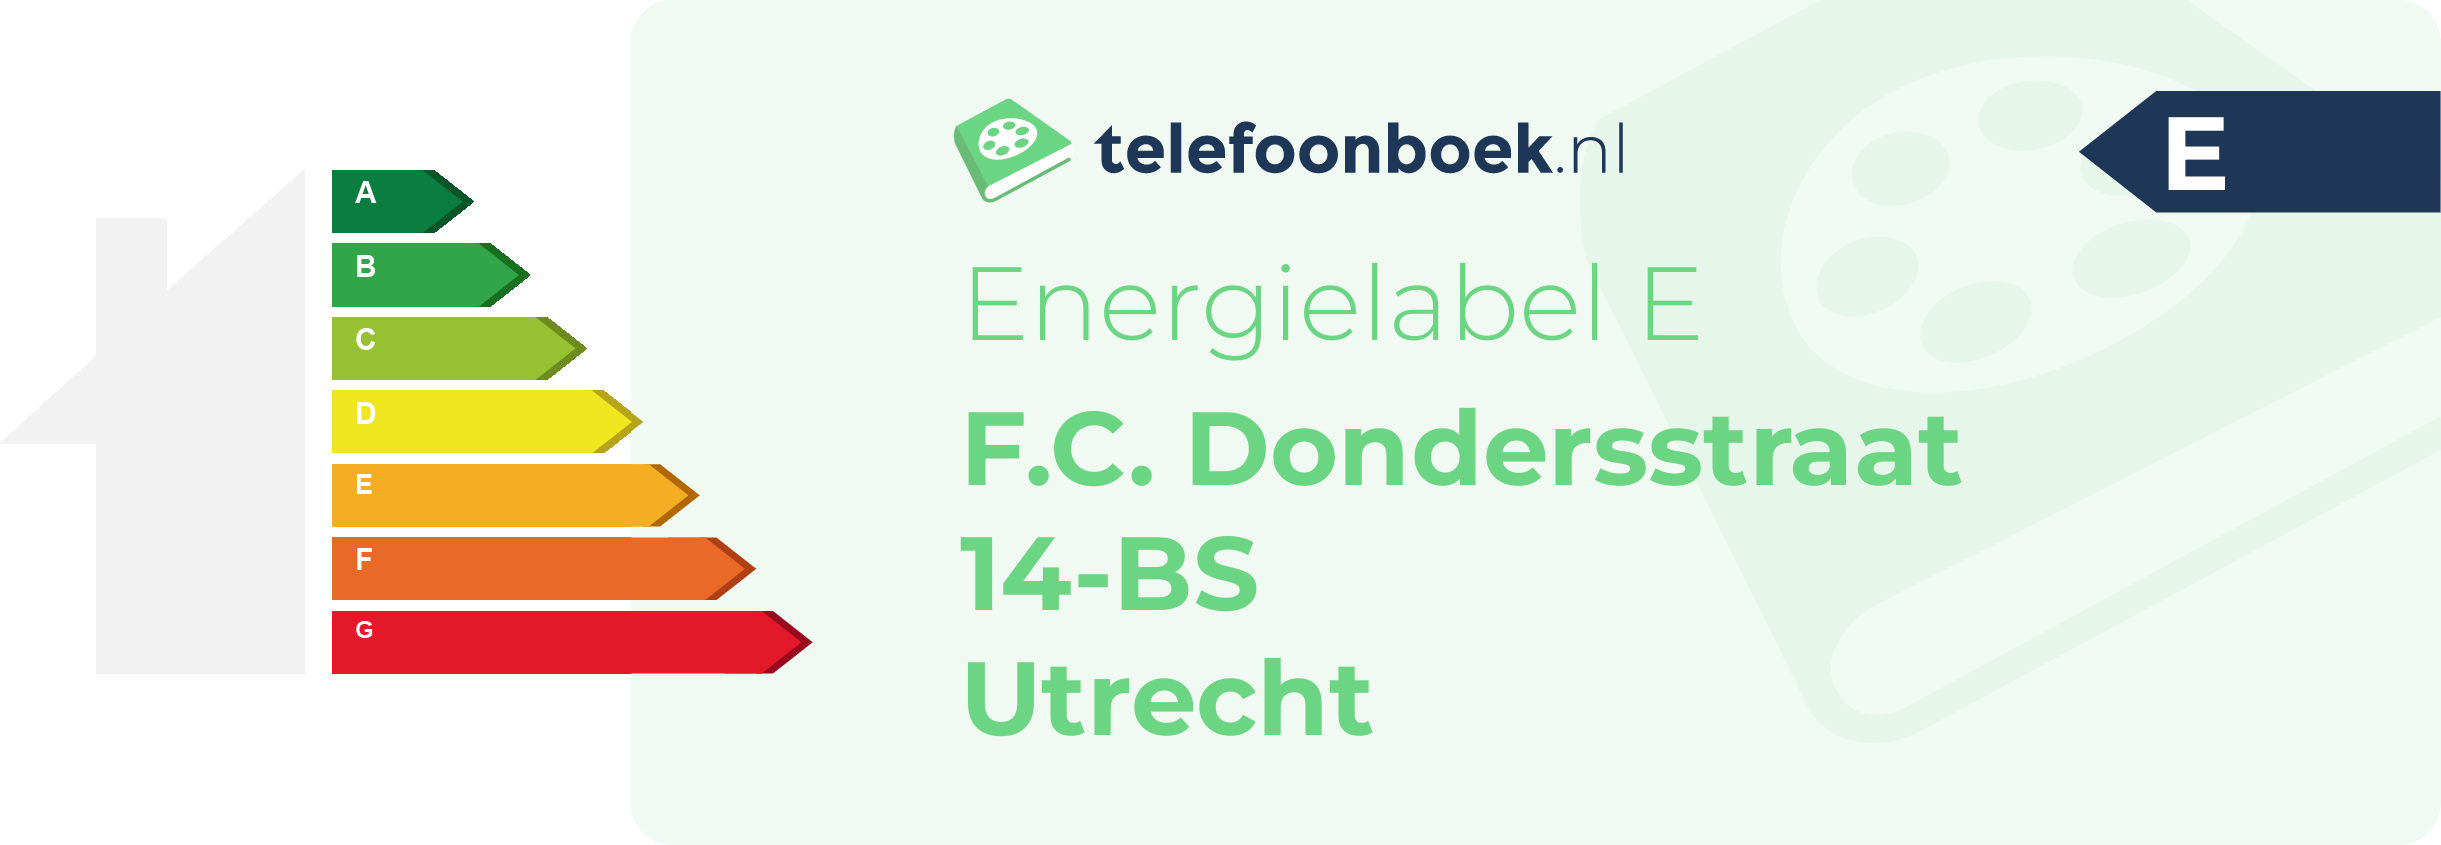 Energielabel F.C. Dondersstraat 14-BS Utrecht